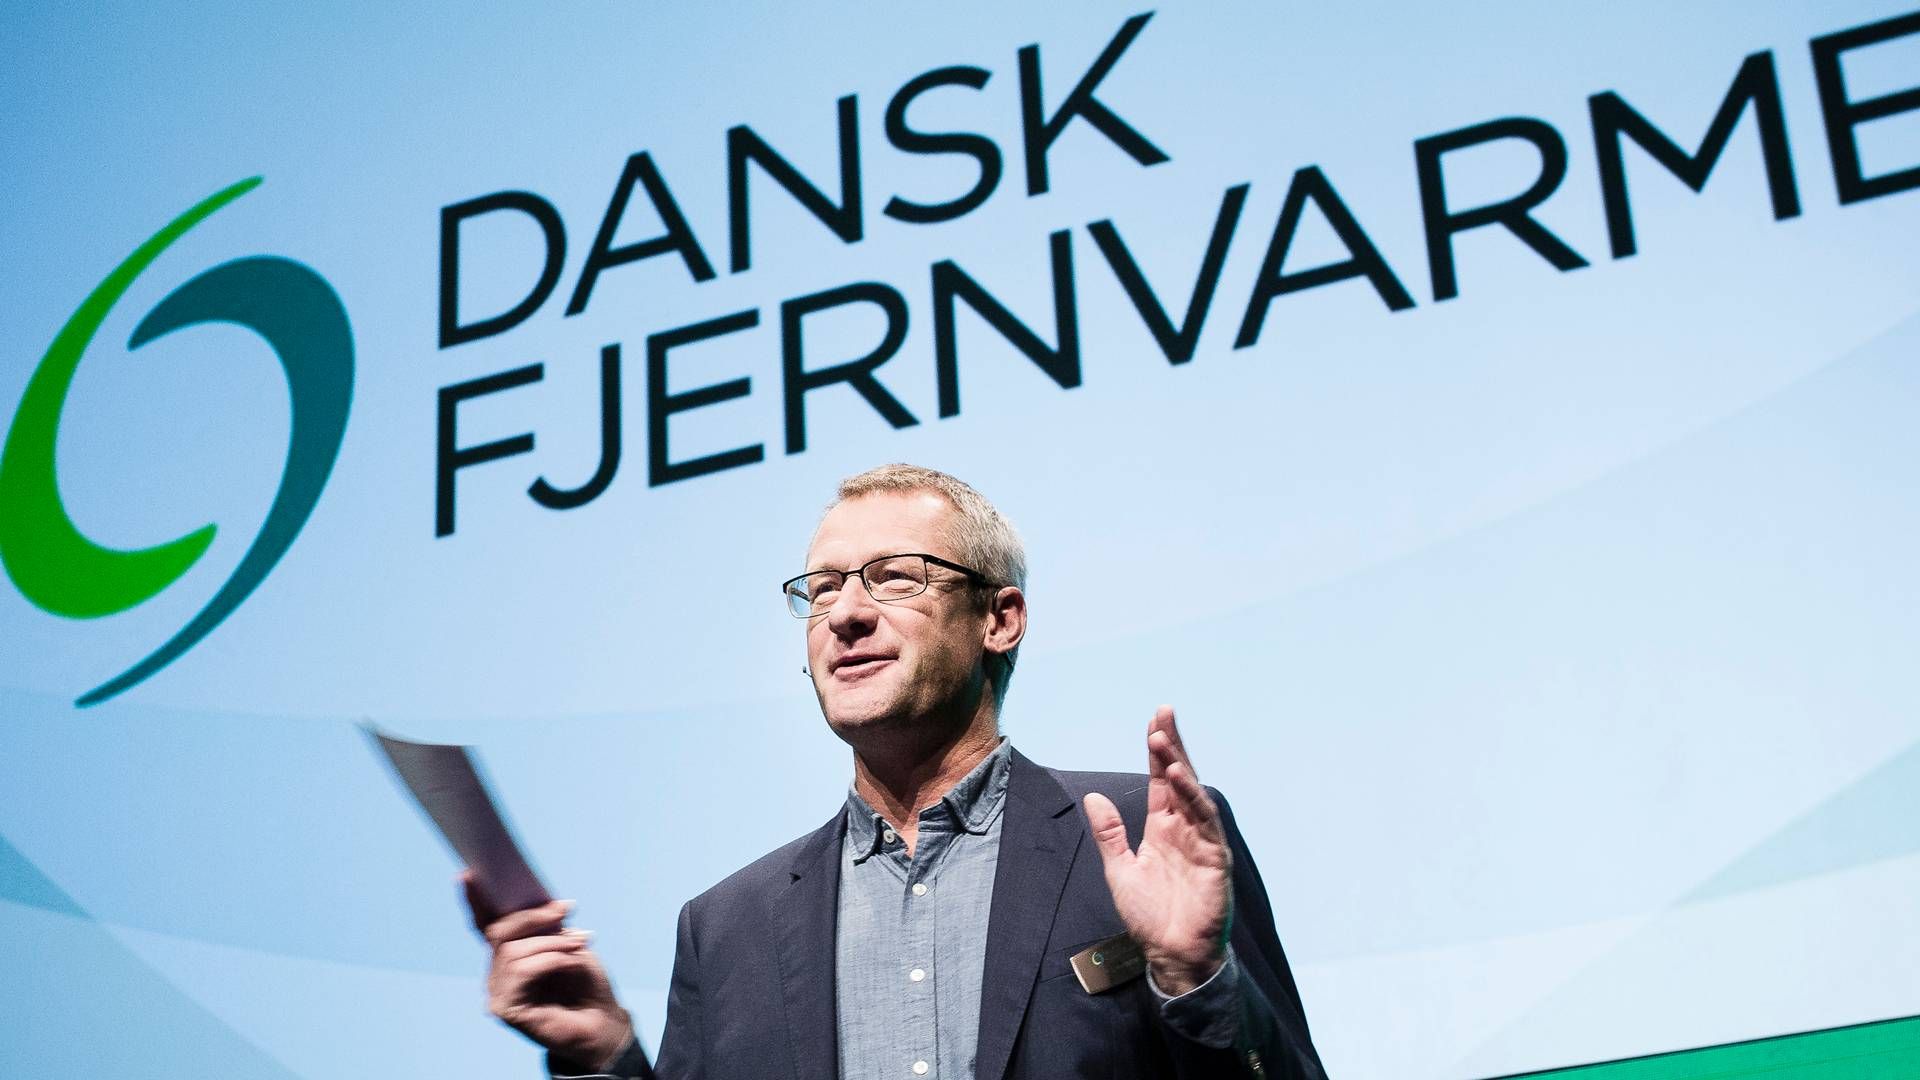 Kim Mortensen er direktør i Dansk Fjernvarme. | Foto: Dansk Fjernvarme